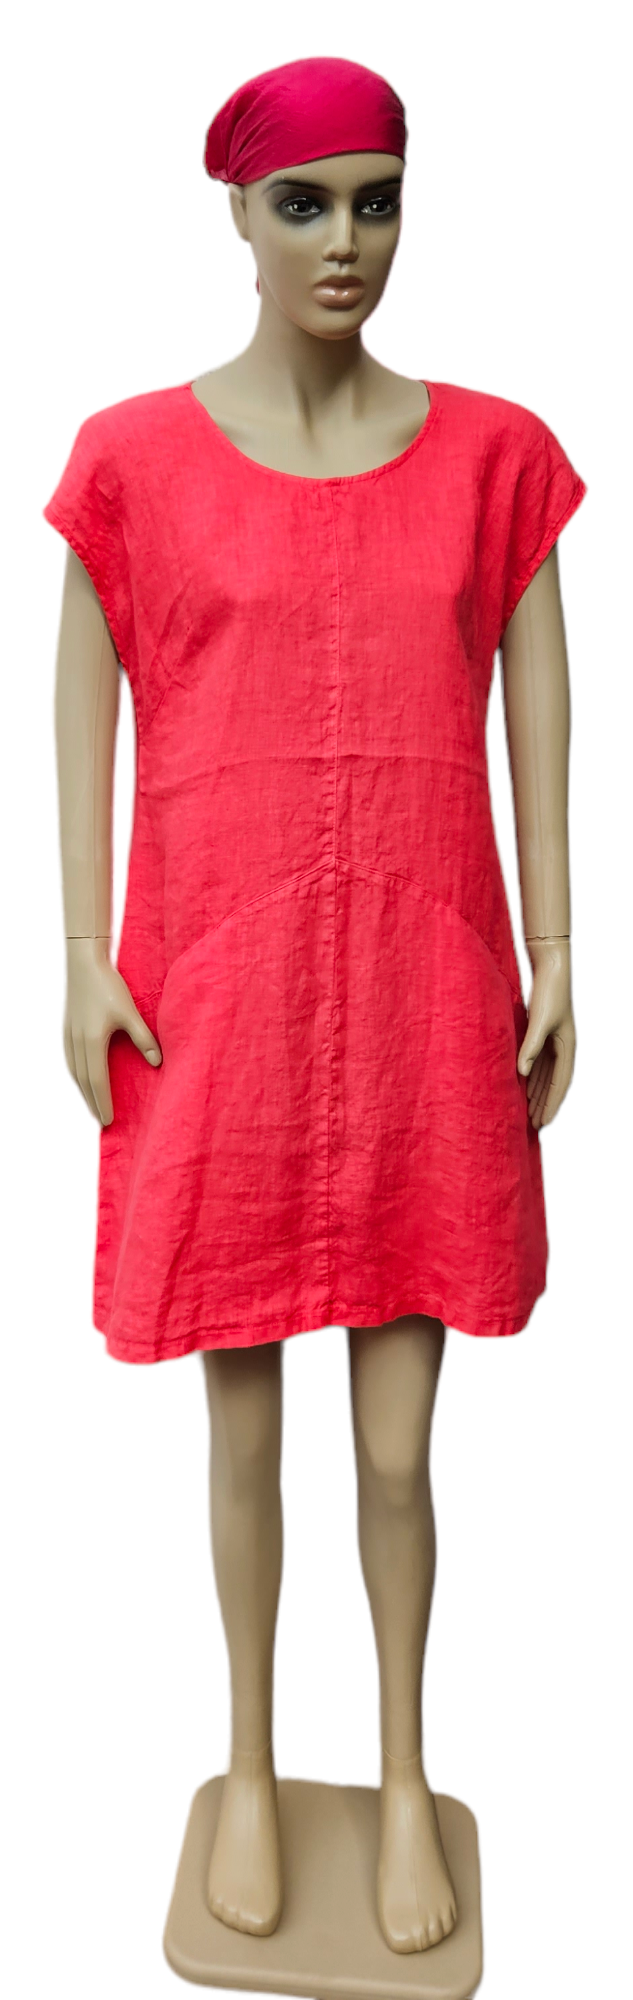 Lněné šaty v melounové barvě - střih "A" s kapsami